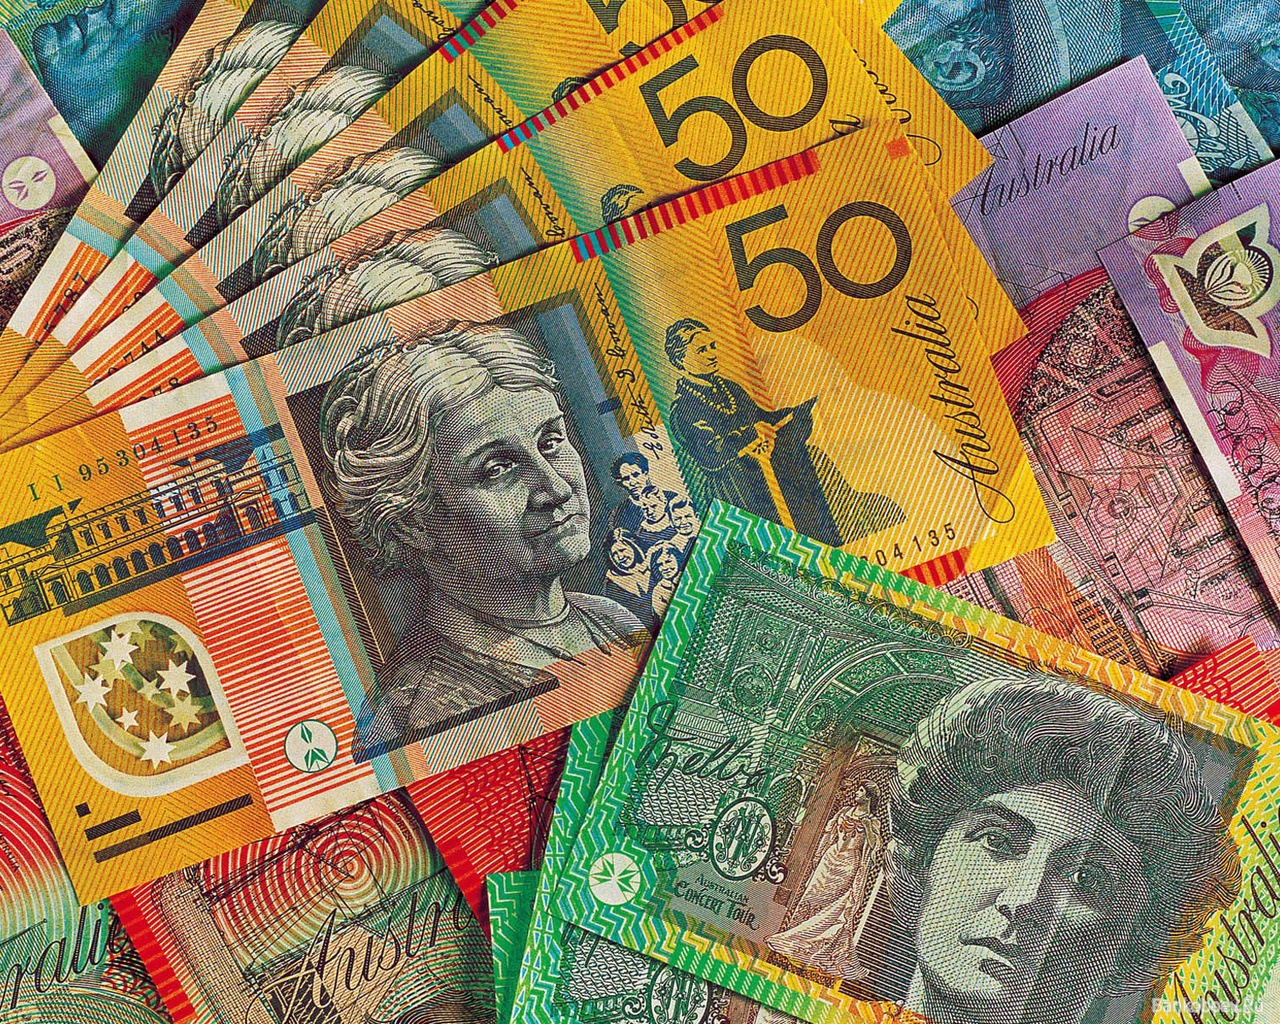 Популярные заставки и фоны Австралийский Доллар на компьютер